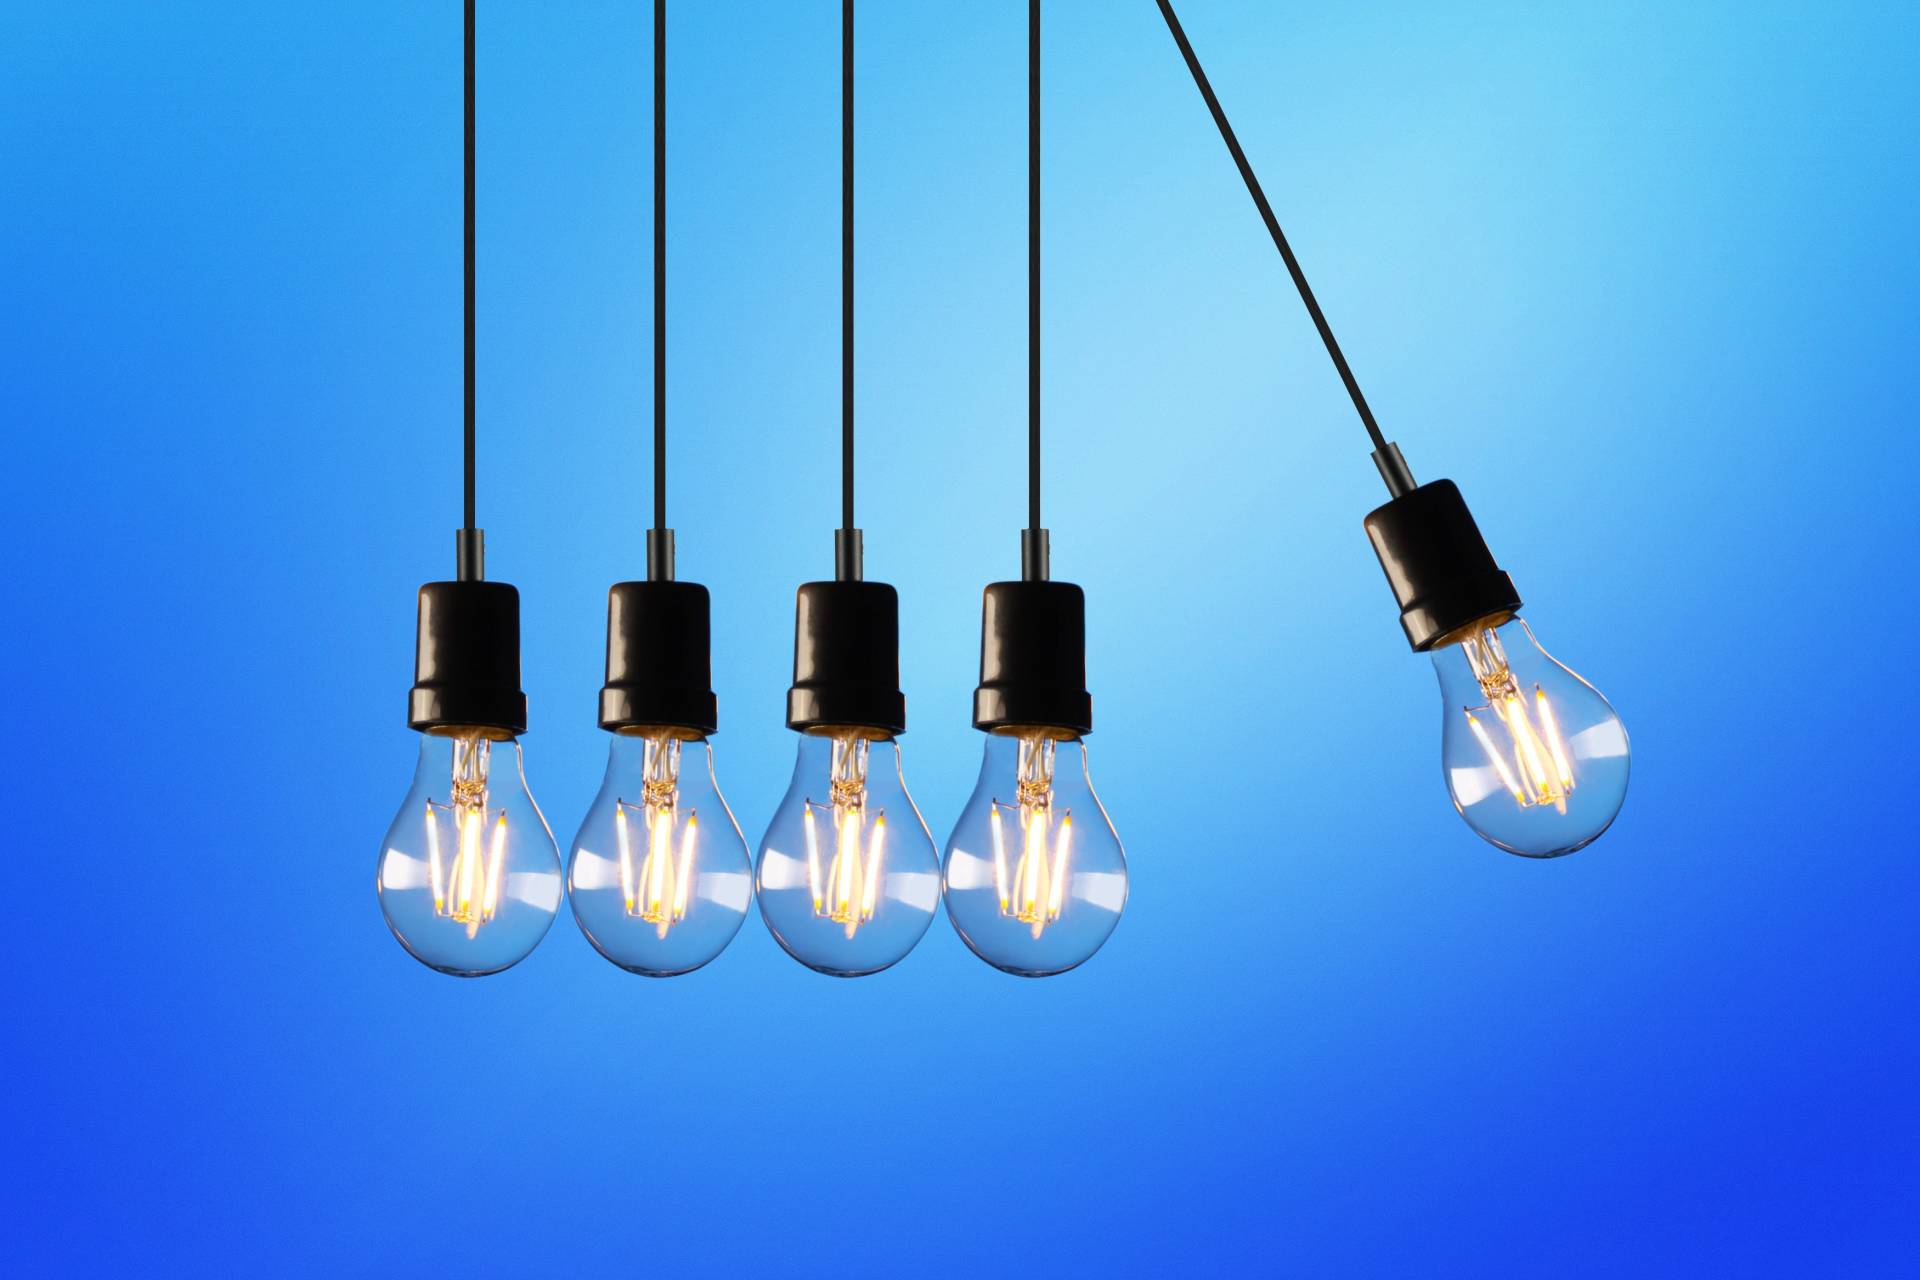 SMART goals lightbulbs